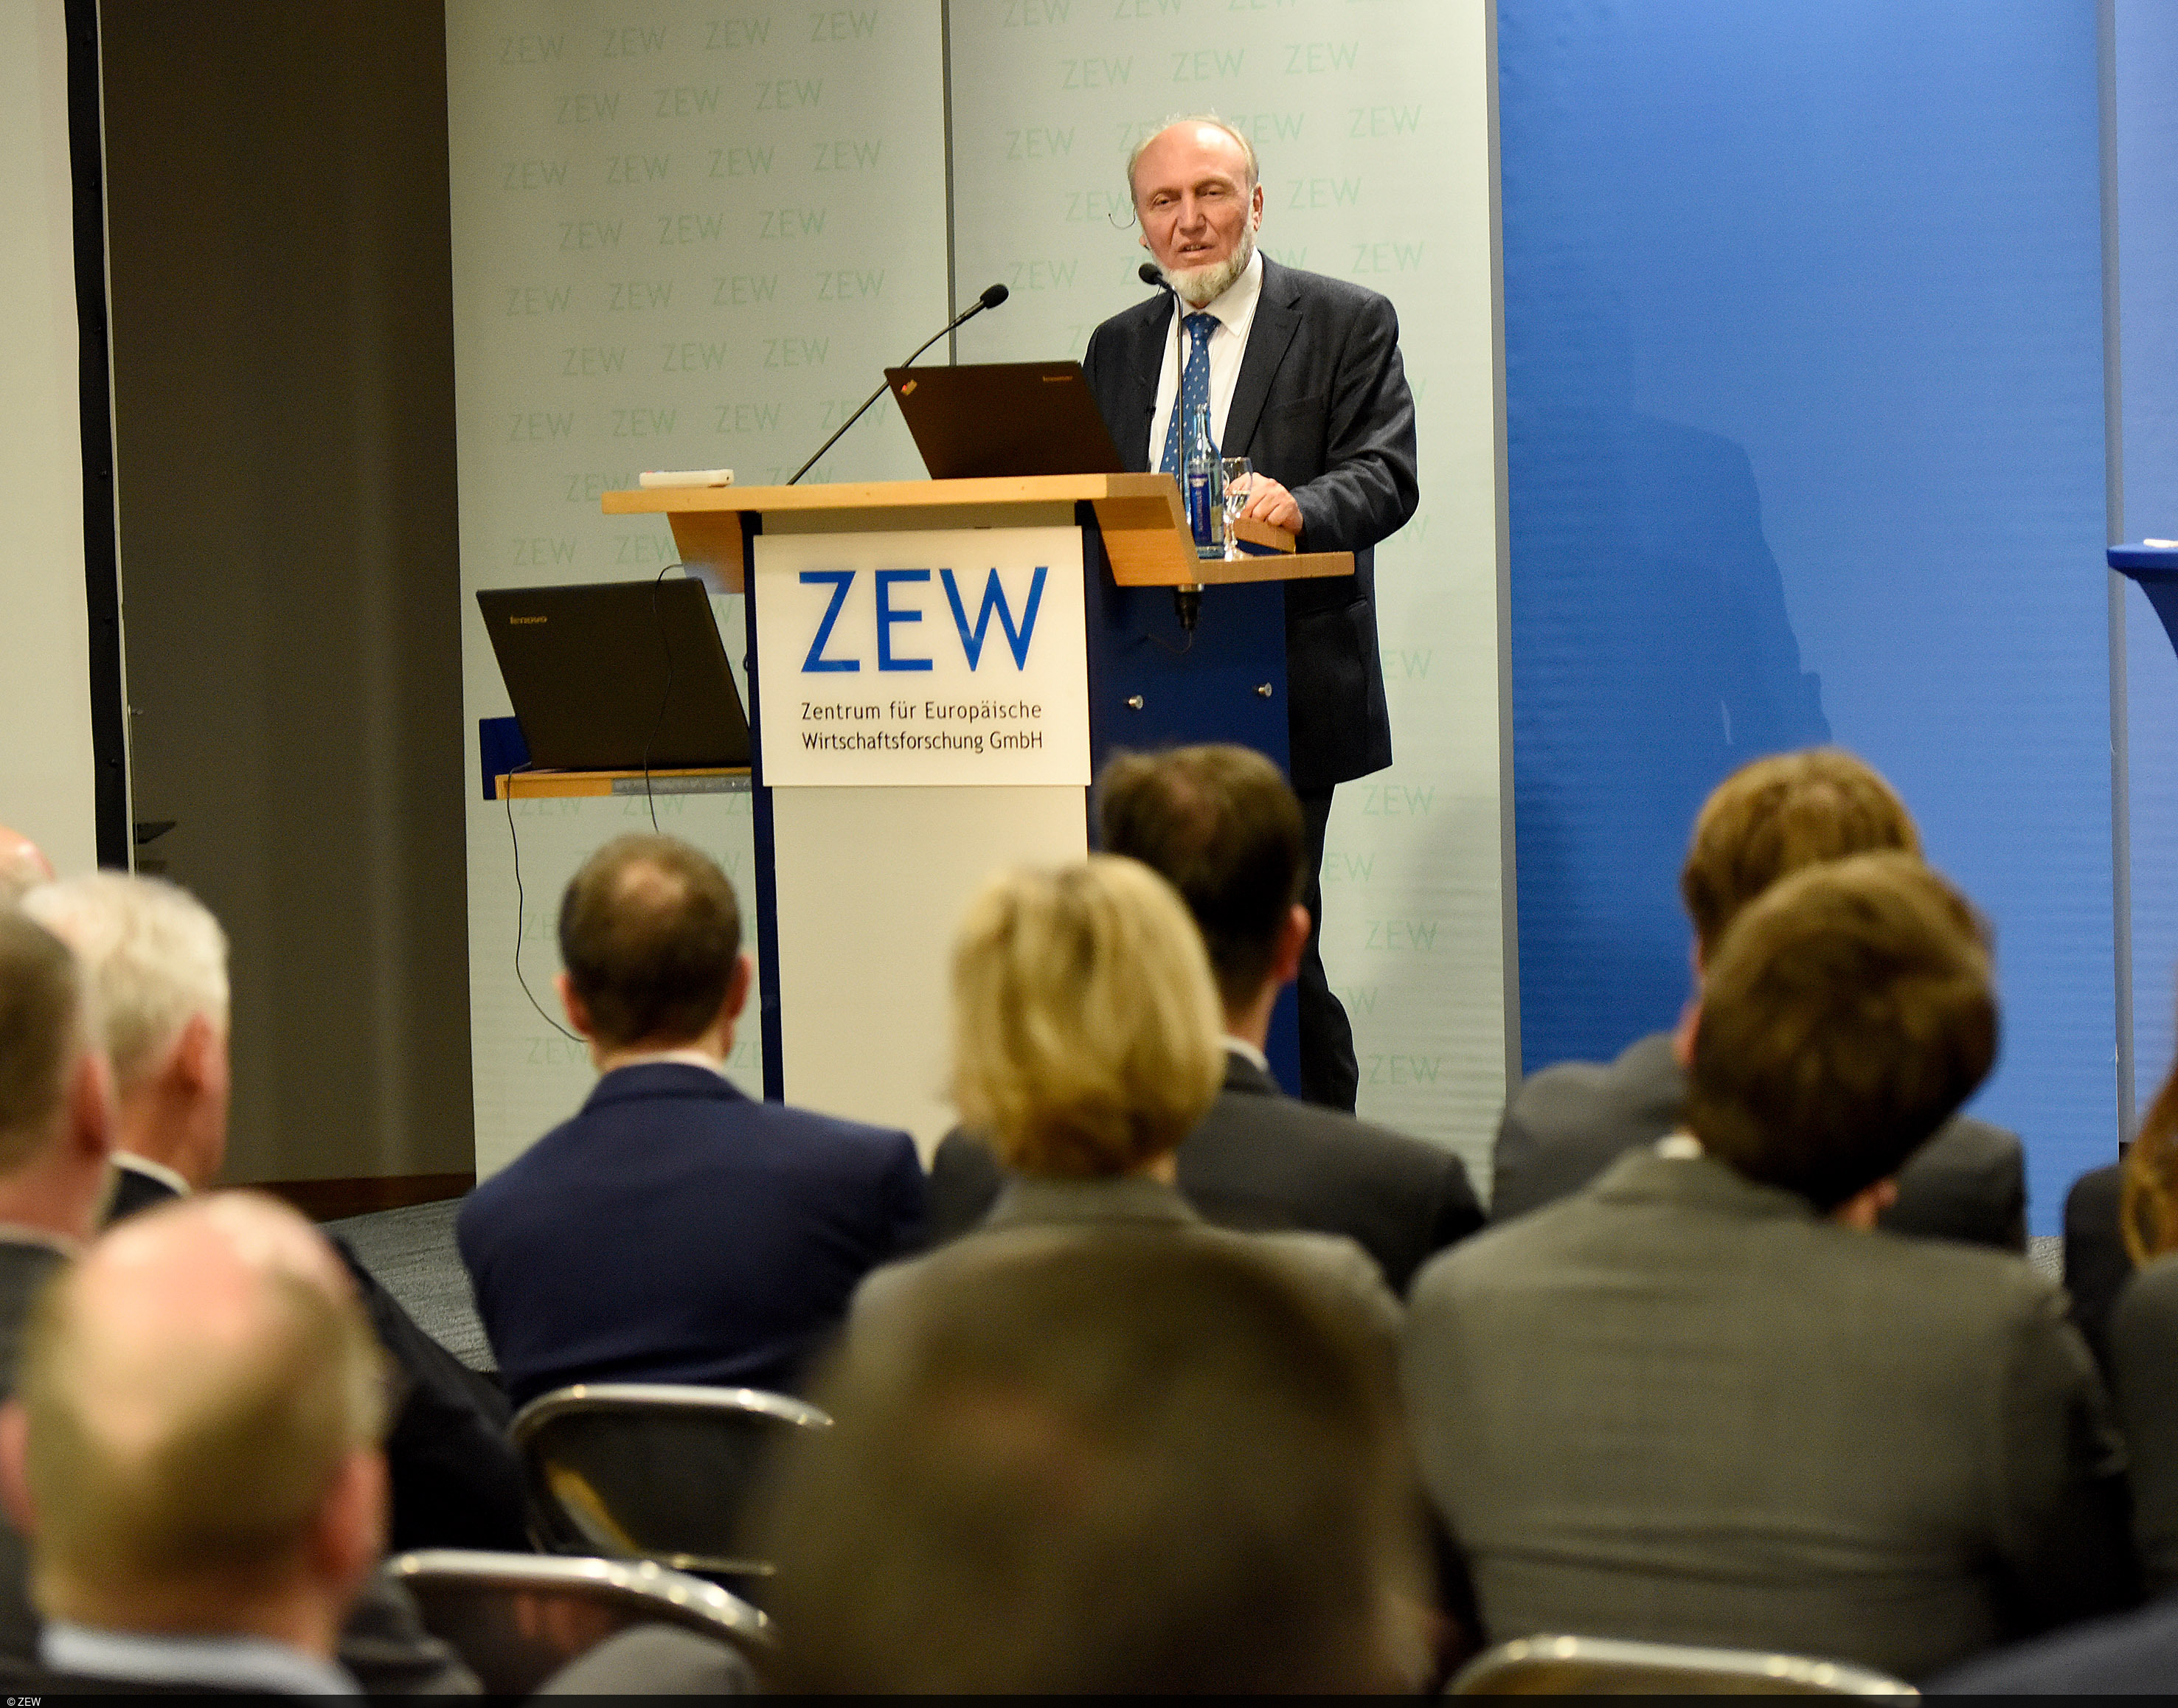 Hans-Werner Sinn stellt sein 15-Punkte-Programm für die Neugründung Europas am ZEW vor